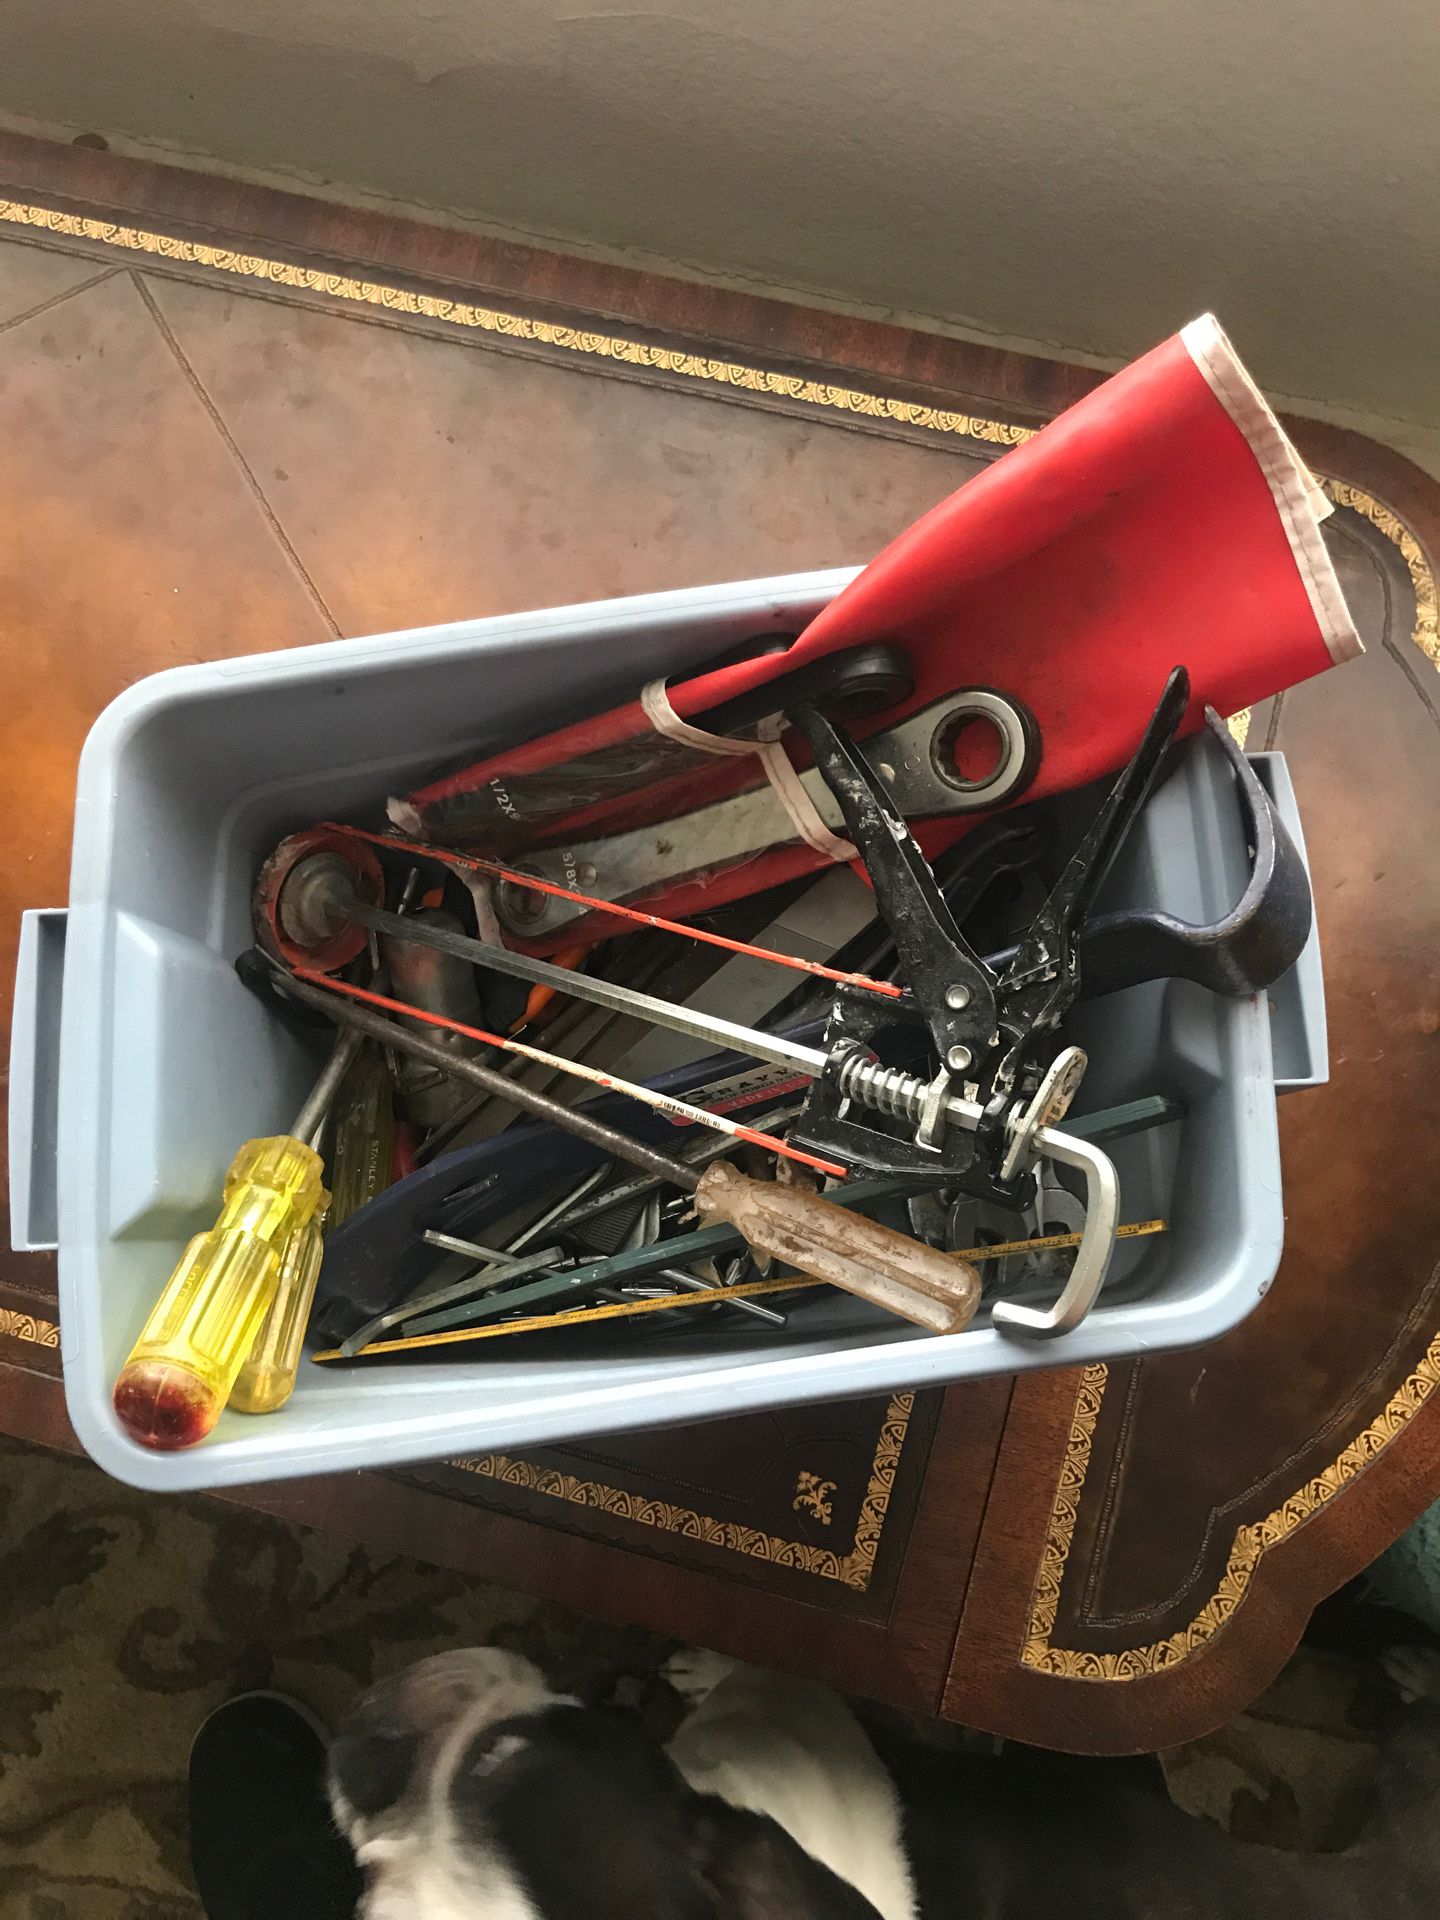 Tub of tools